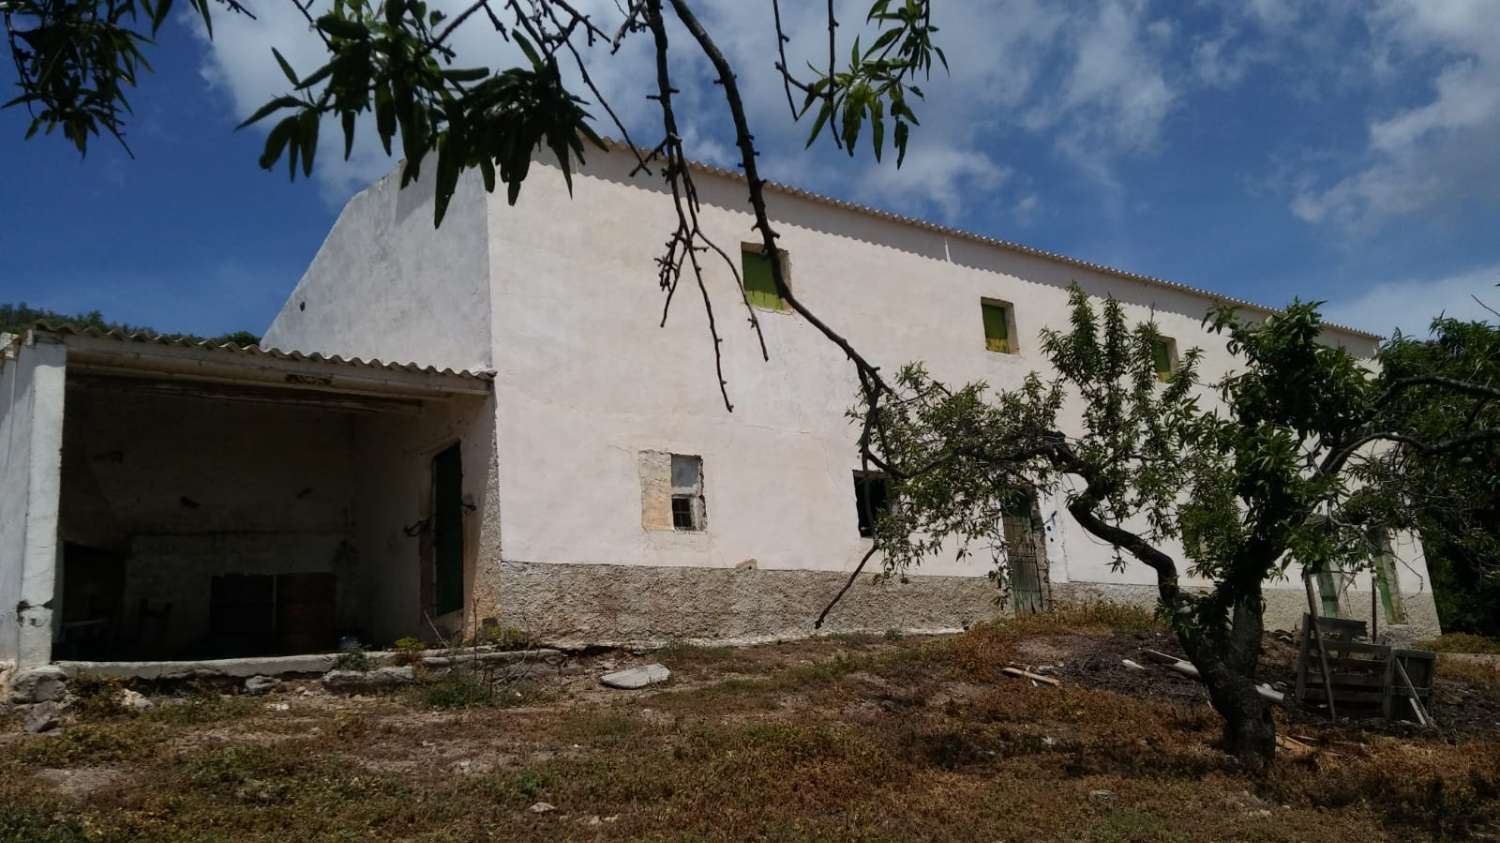 Ferme agricole avec ferme rurale à La Contraviesa, Torvizcón, Grenade